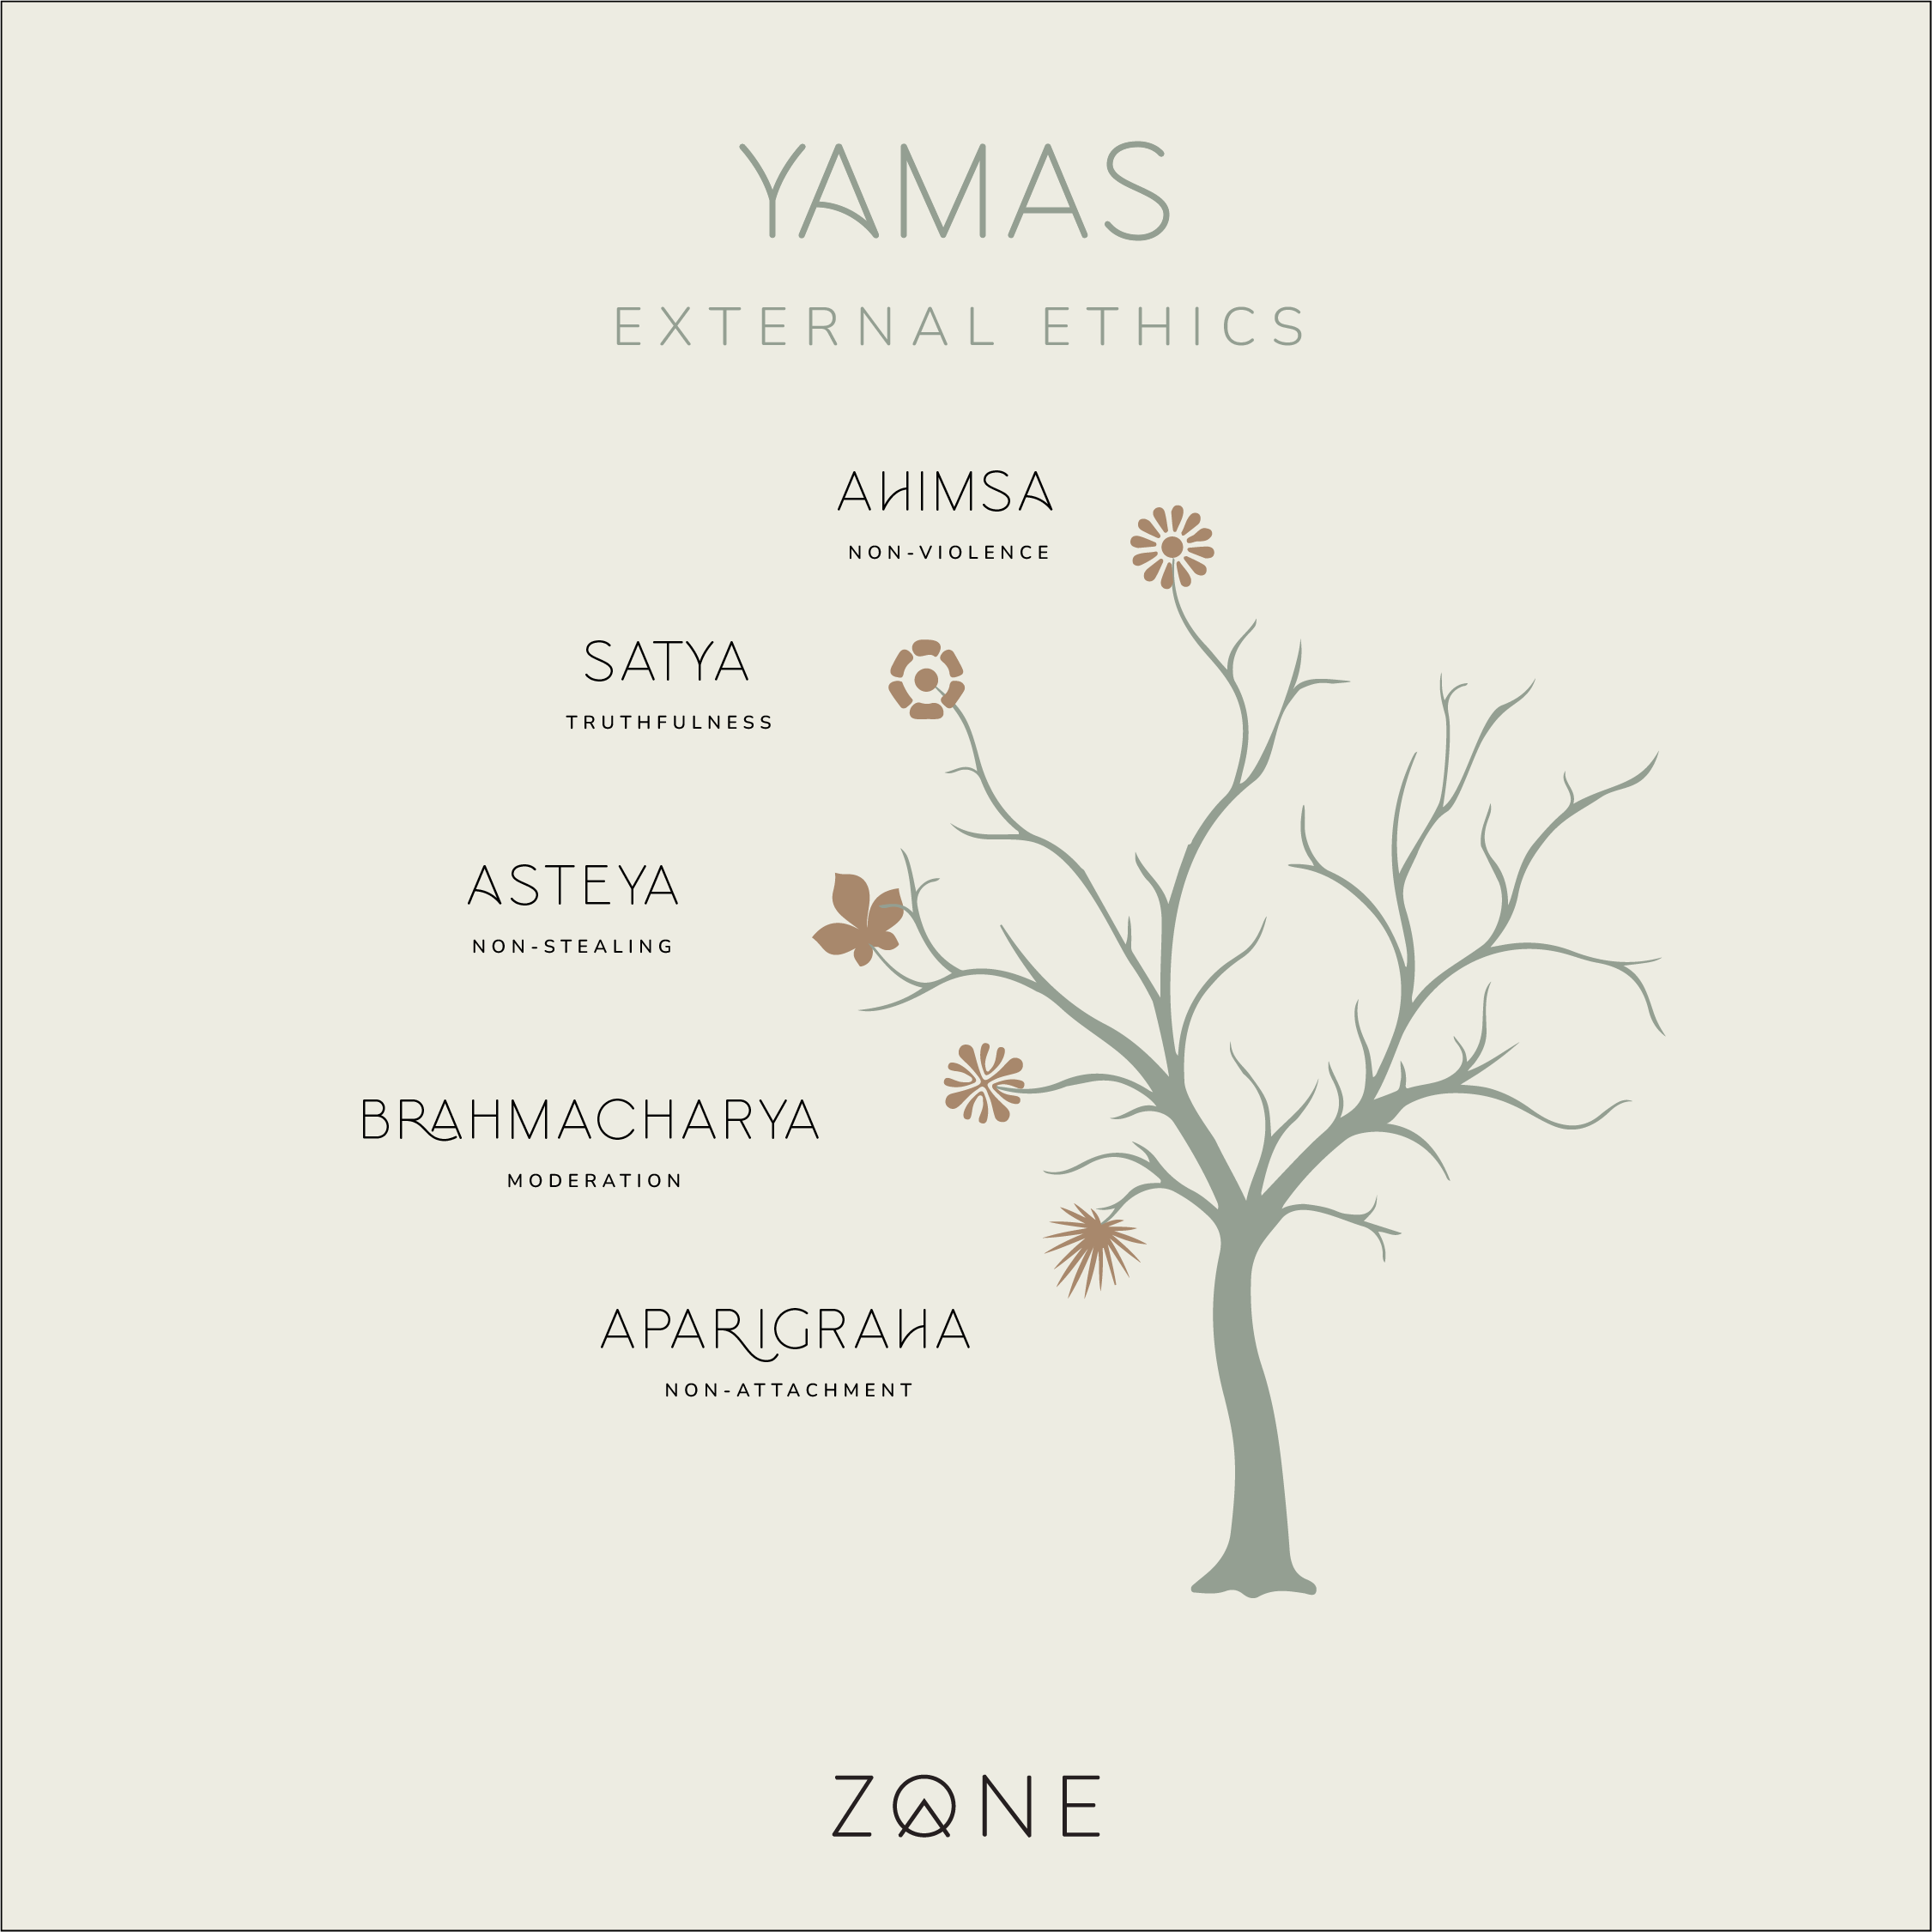 The Yamas